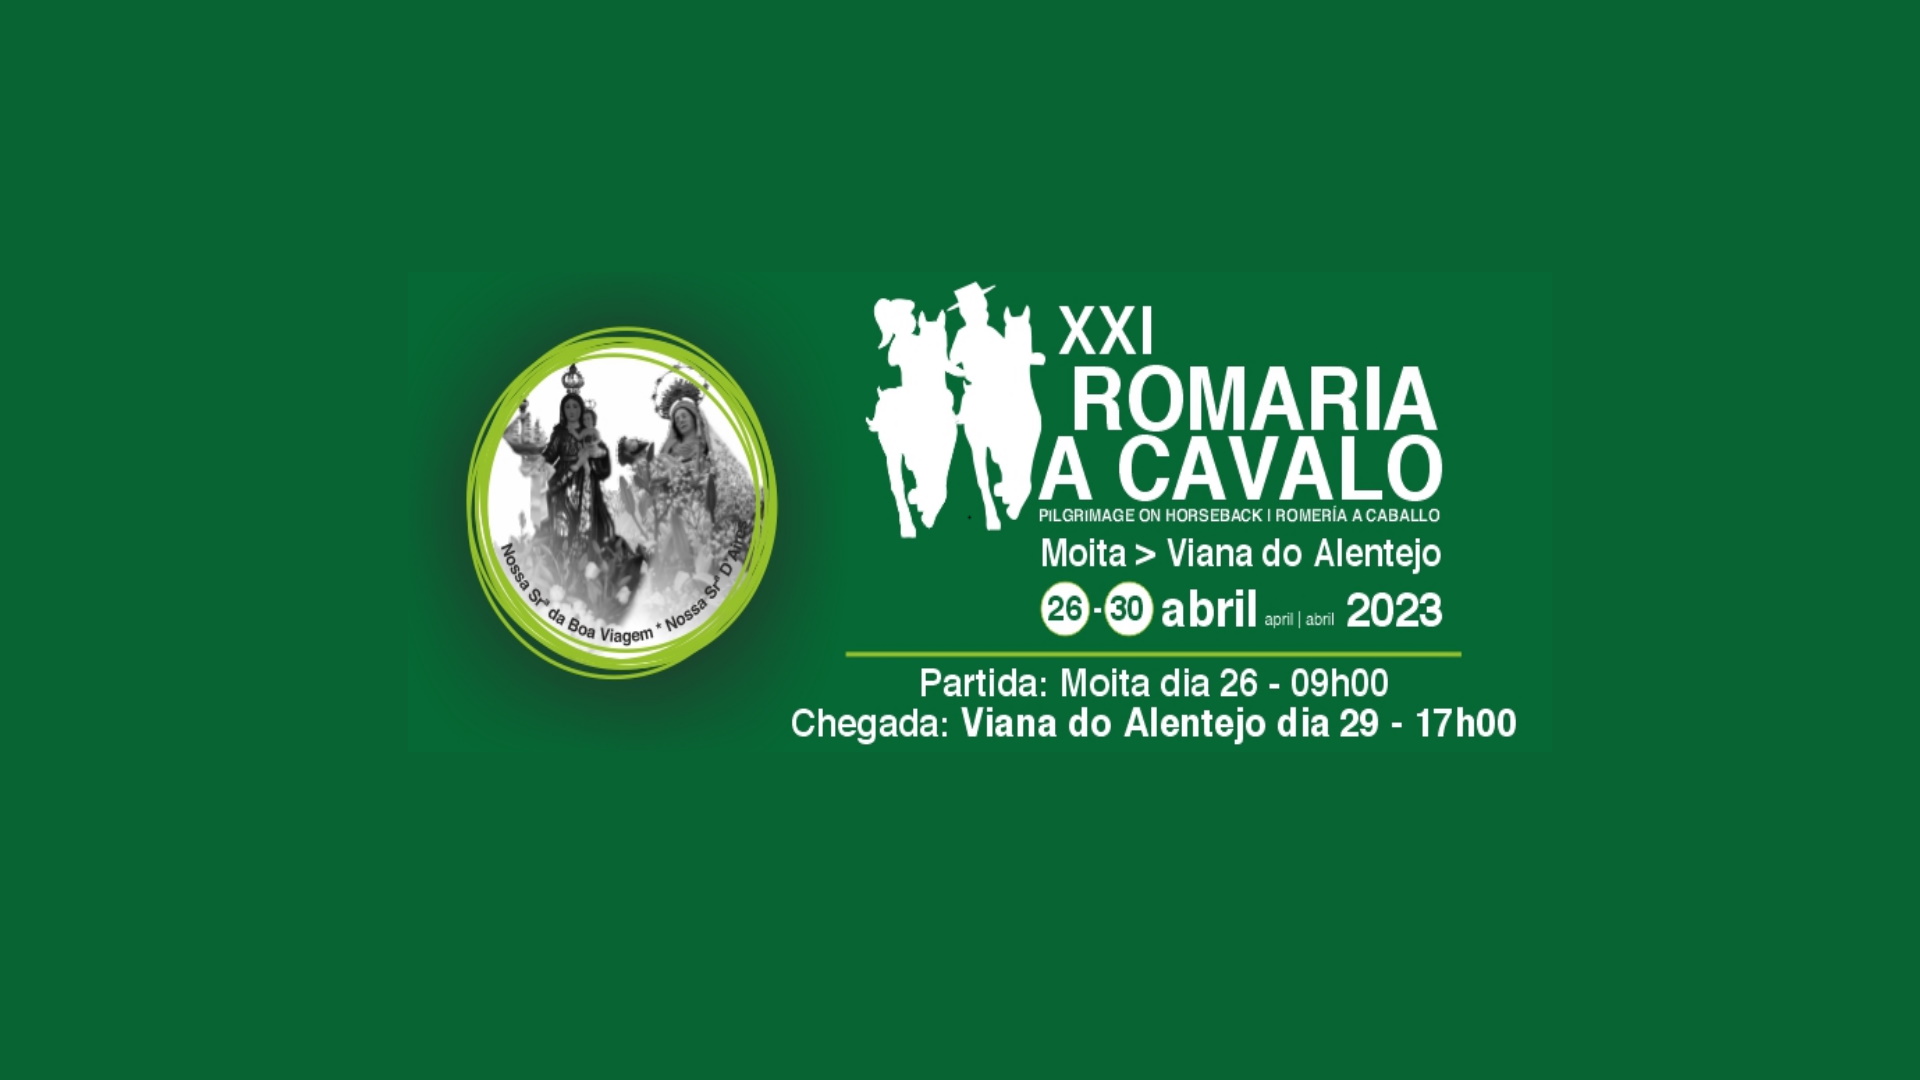 XXI Romaria a Cavalo – Moita > Viana do Alentejo